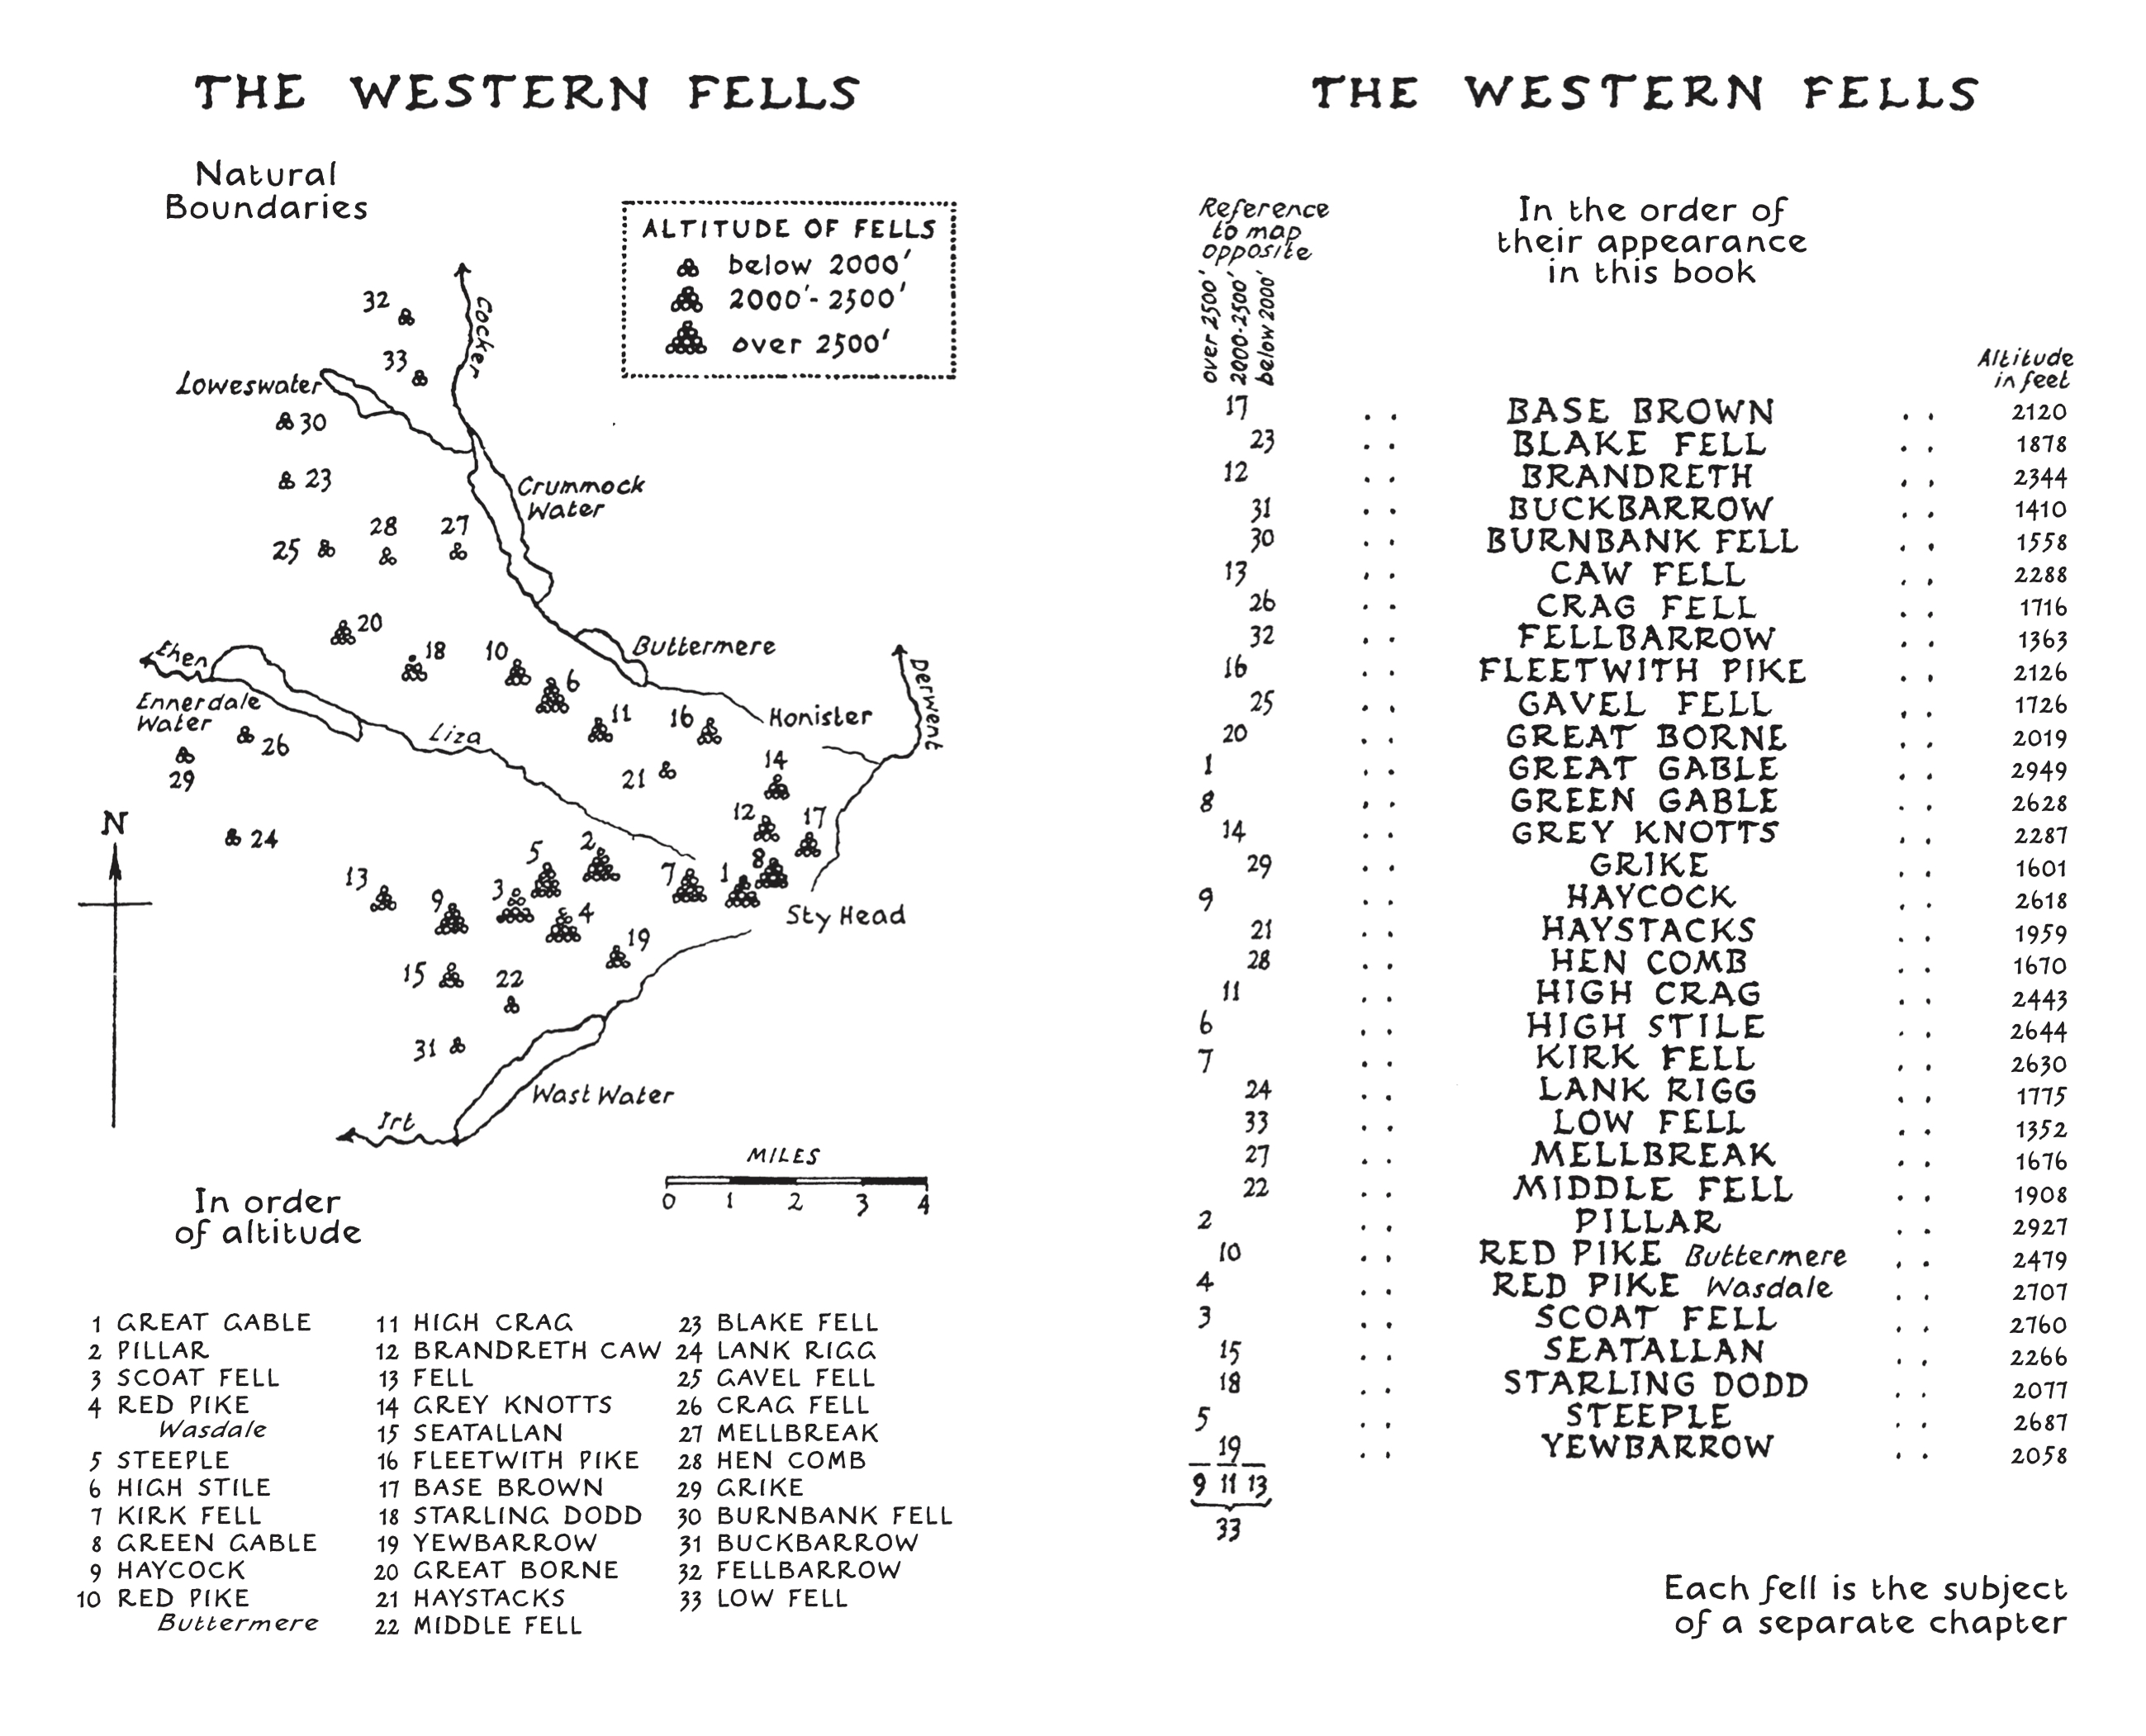 The Western Fells